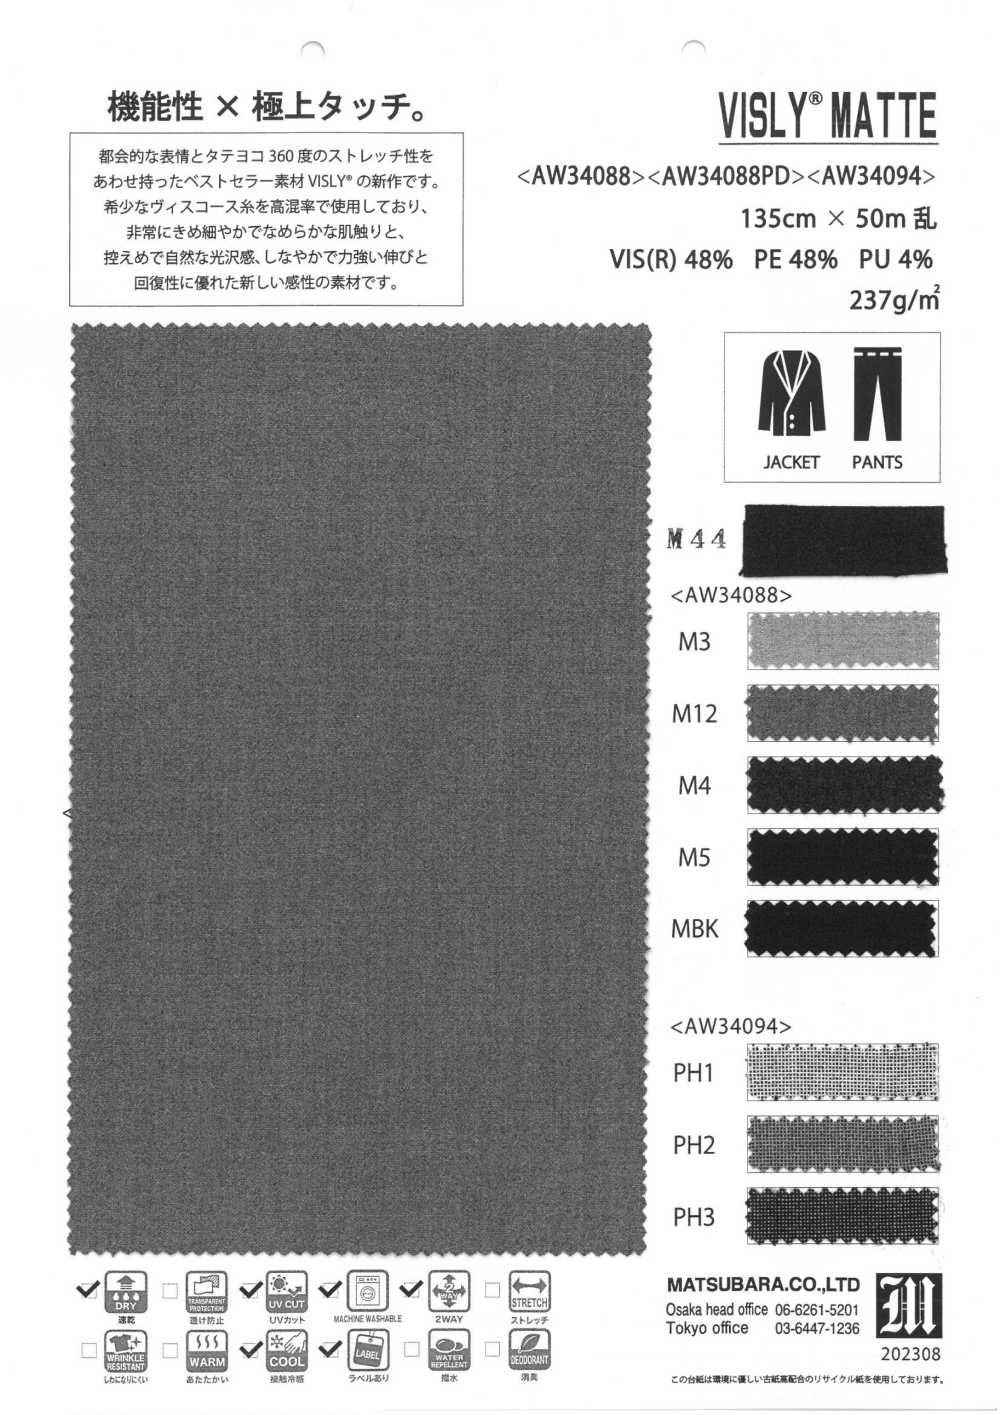 AW34088PD Bisley Mat[Textile / Fabric] Matsubara